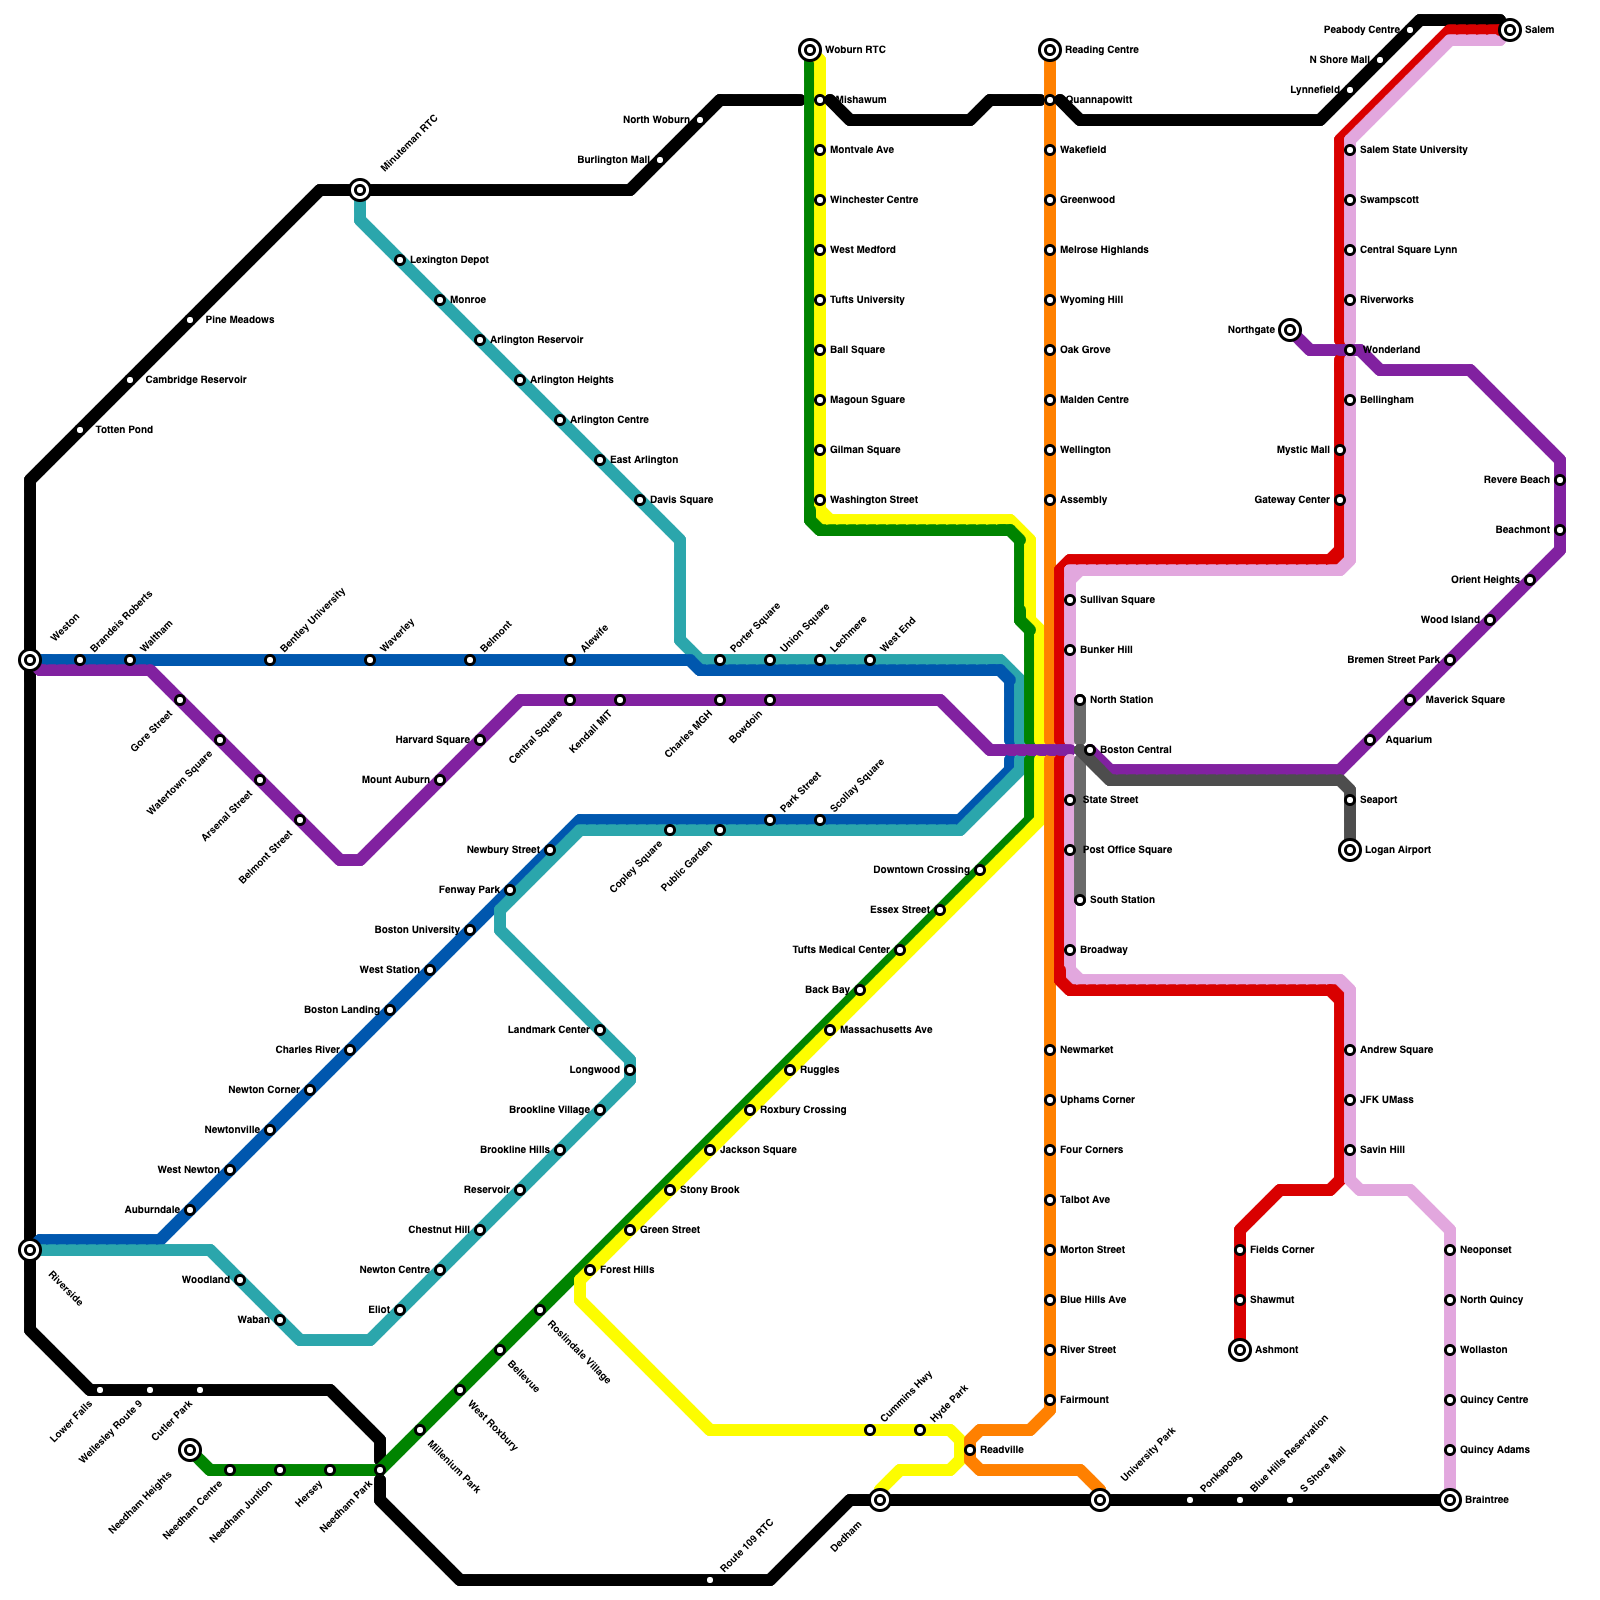 metro infographic creator